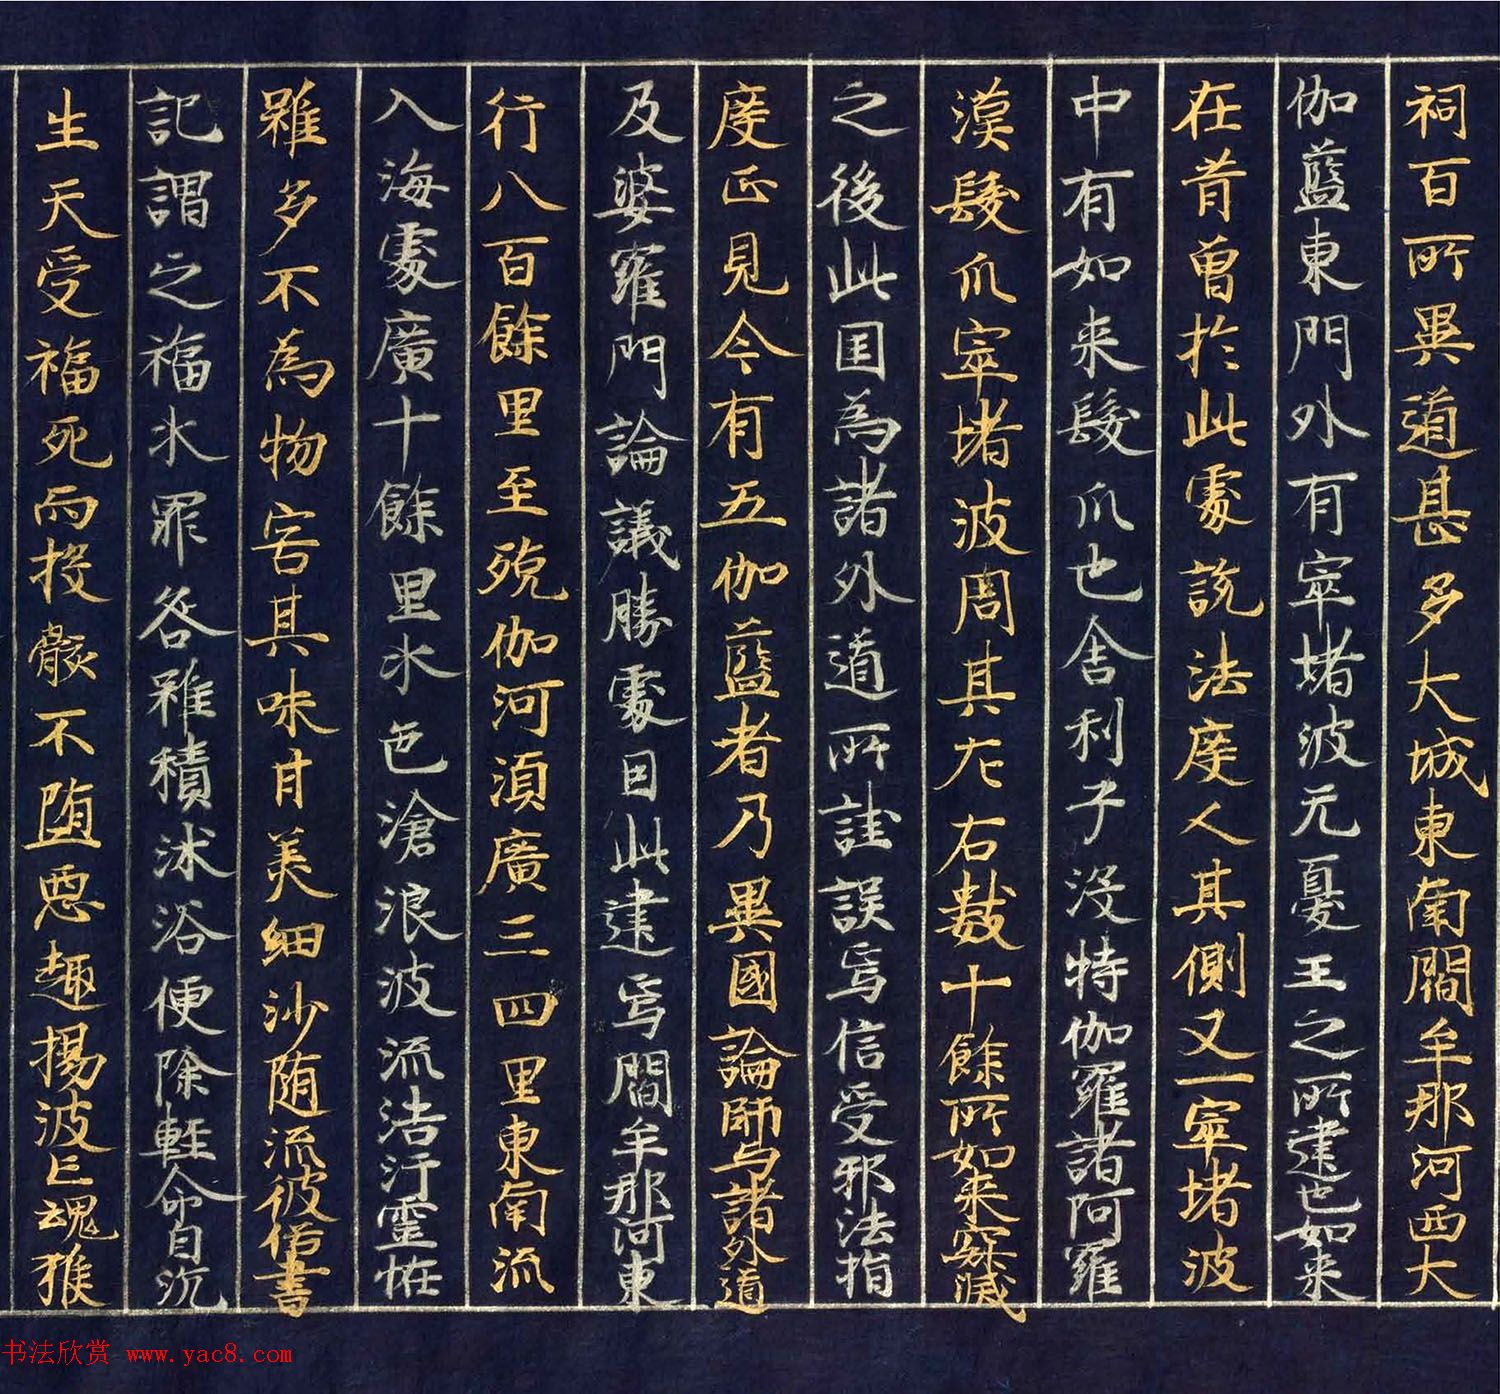 12世纪绀纸金银交替书写《大唐西域记卷四》